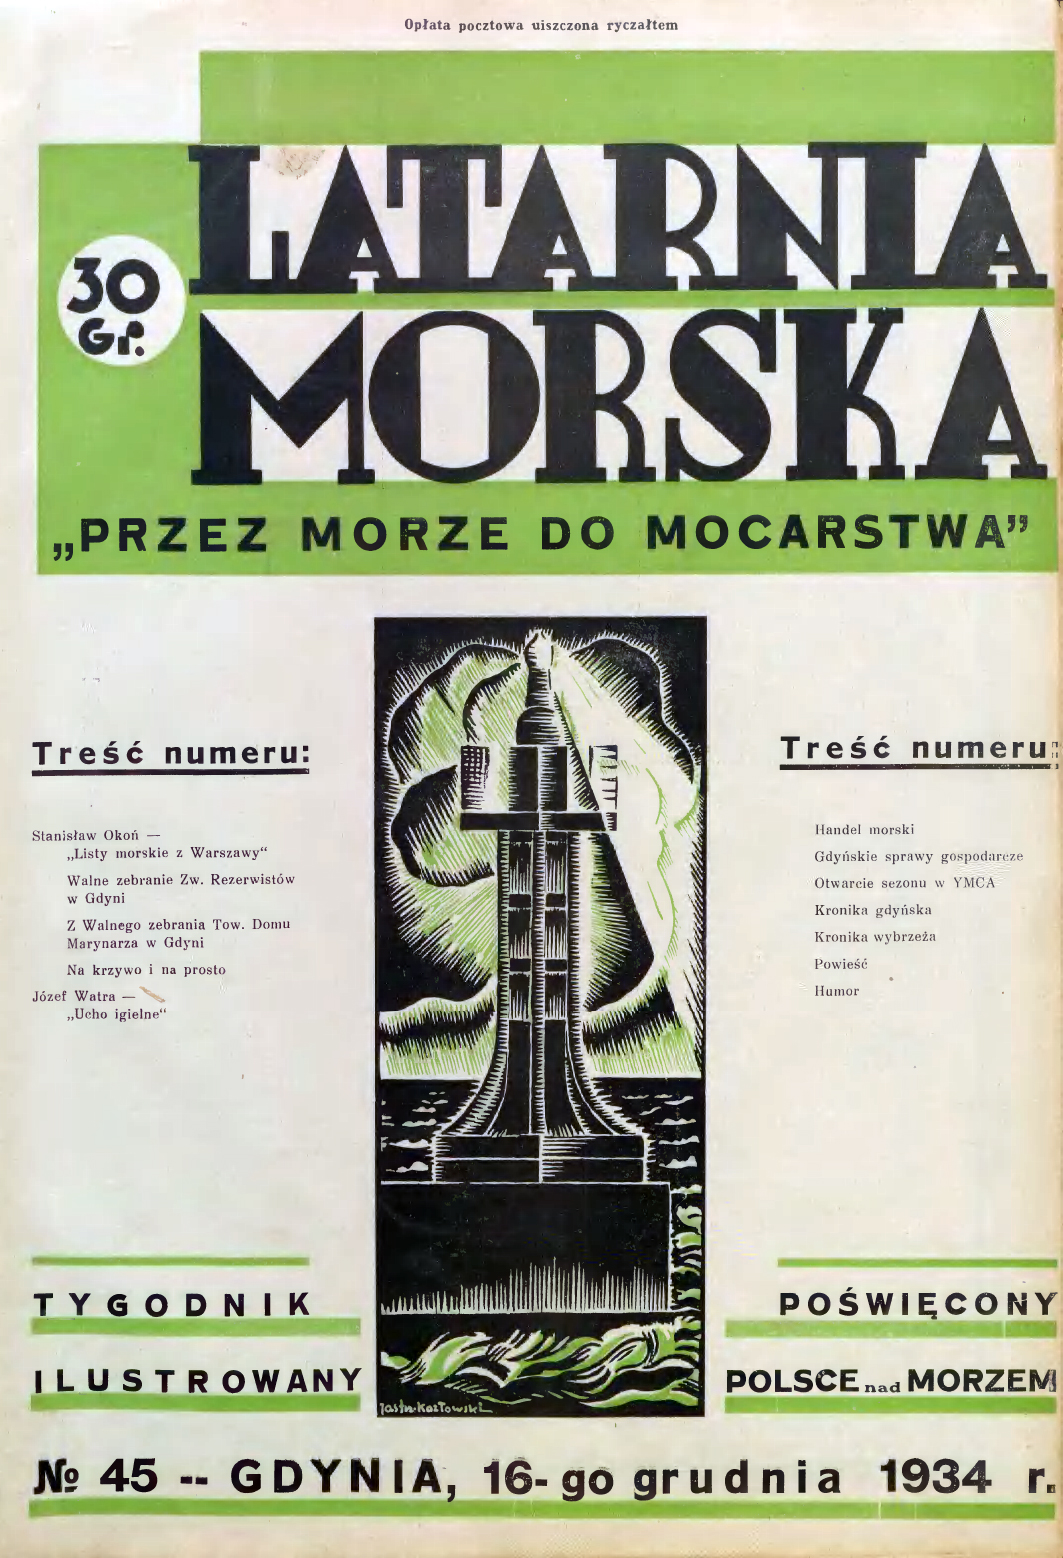 Latarnia Morska: tygodnik ilustrowany poświęcony Polsce nad morzem. – Gdynia : Balto Polak – Zakłady Graficzne i Wydawnicze, 1934, nr 45